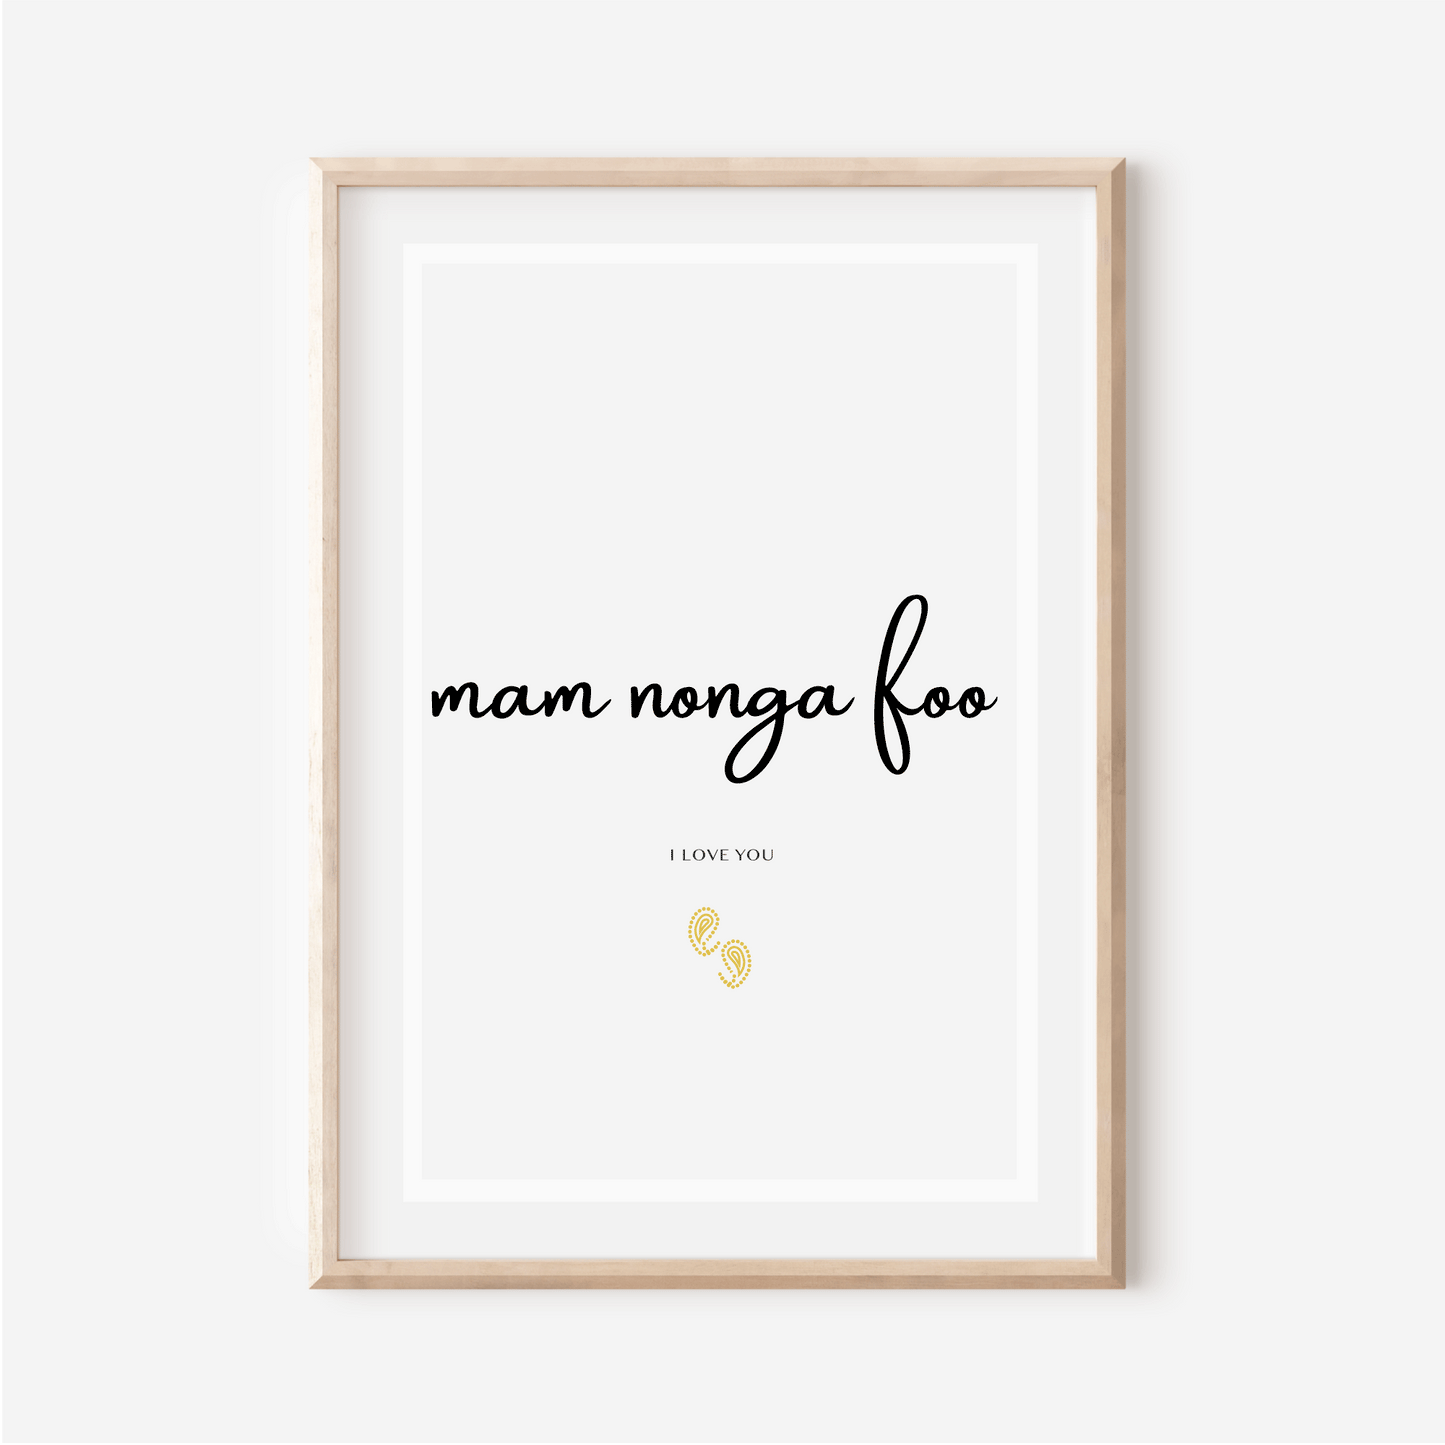 Affiche "Je t aime" en Mooré - "Mam nonga foo" - 30x40 cm